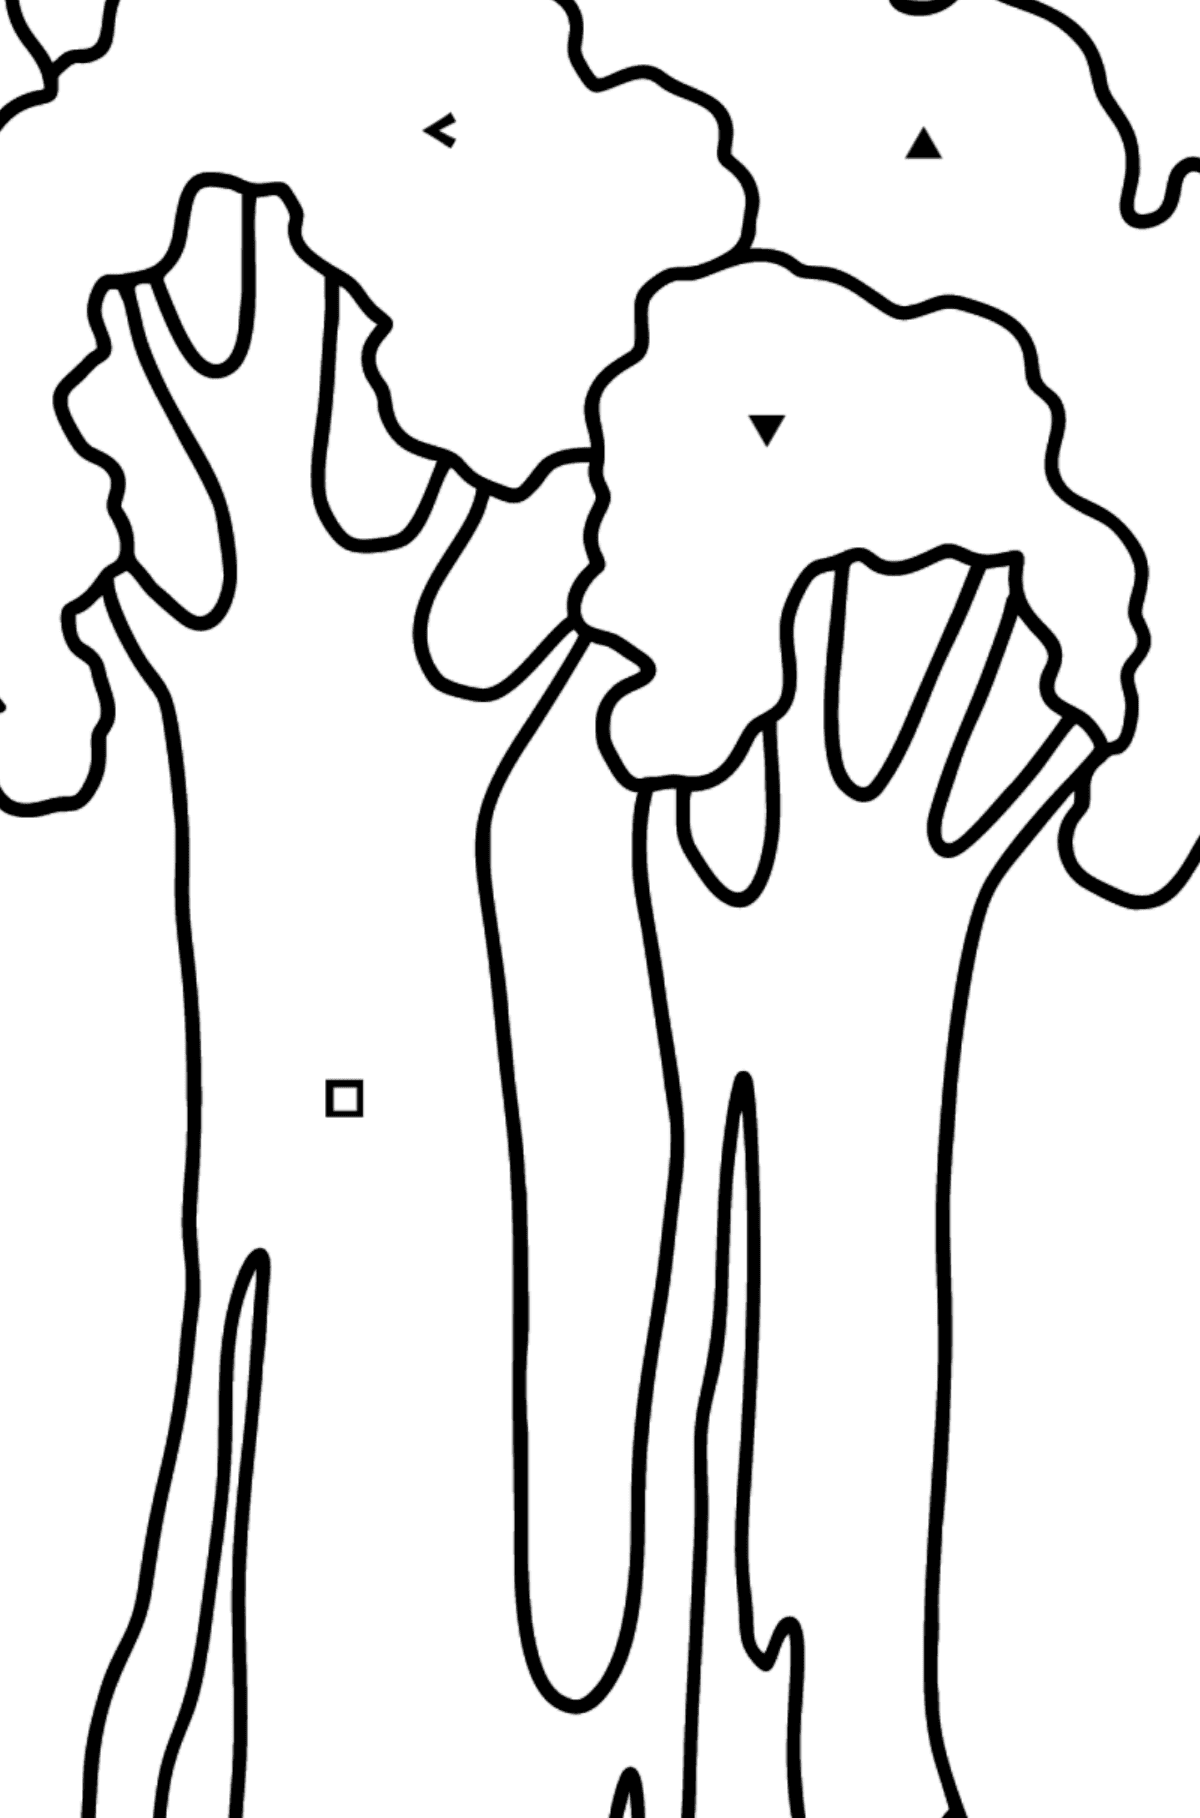 Dibujo de Sequoia para colorear - Colorear por Símbolos para Niños